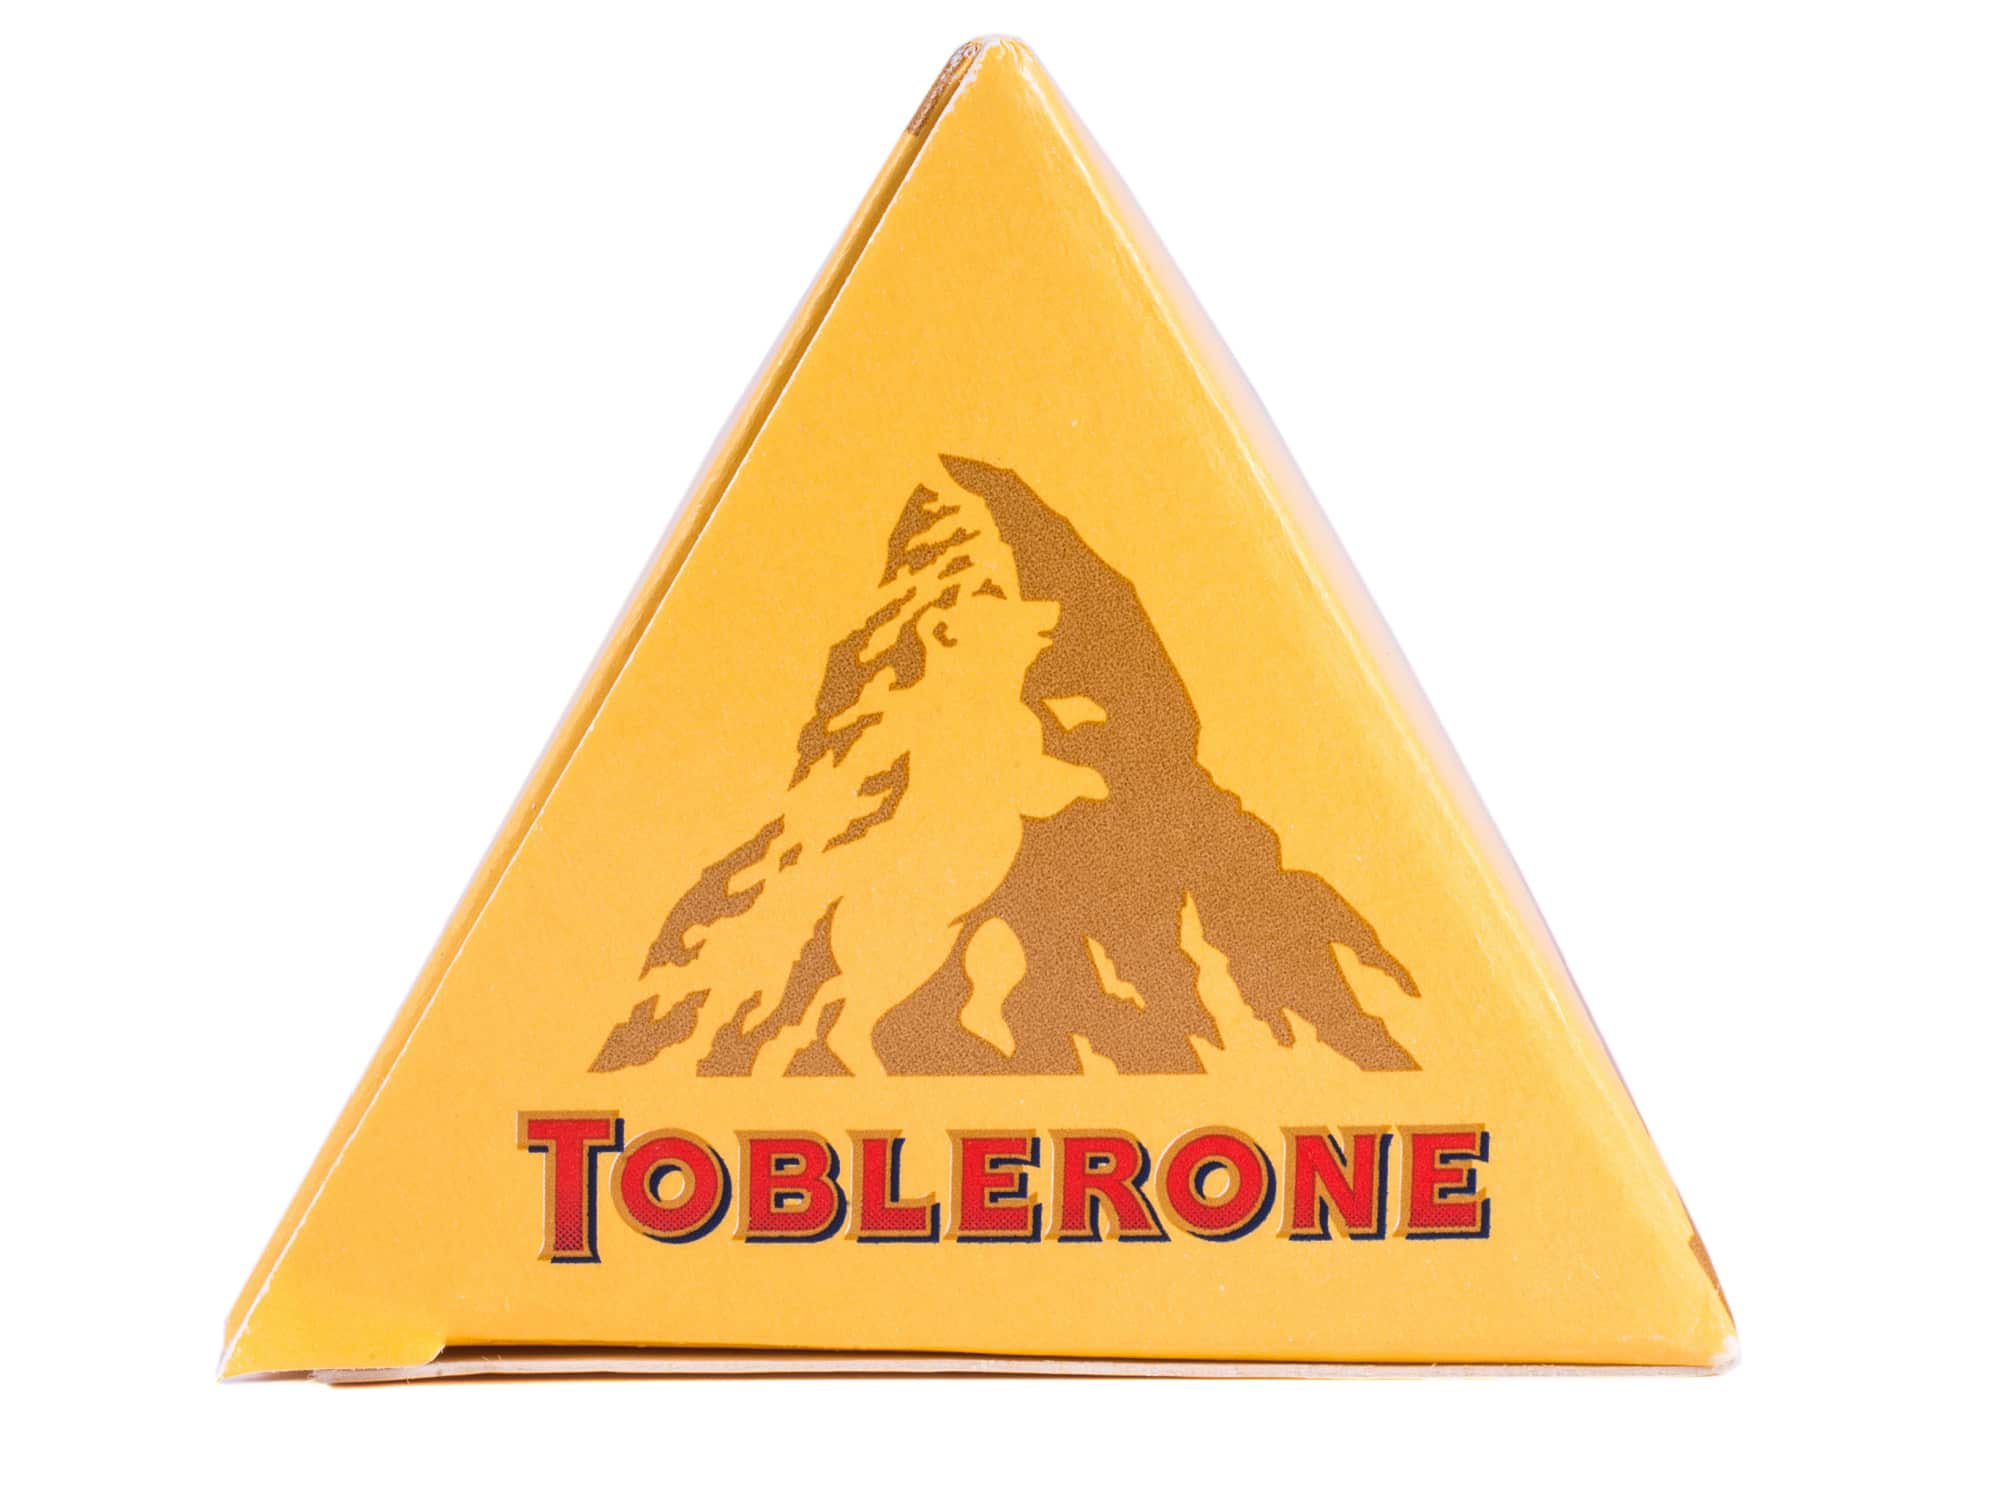  Қош бол Тоблерон тауы: әйгілі шоколад логотипін өзгерту - Неліктен екенін біліңіз!